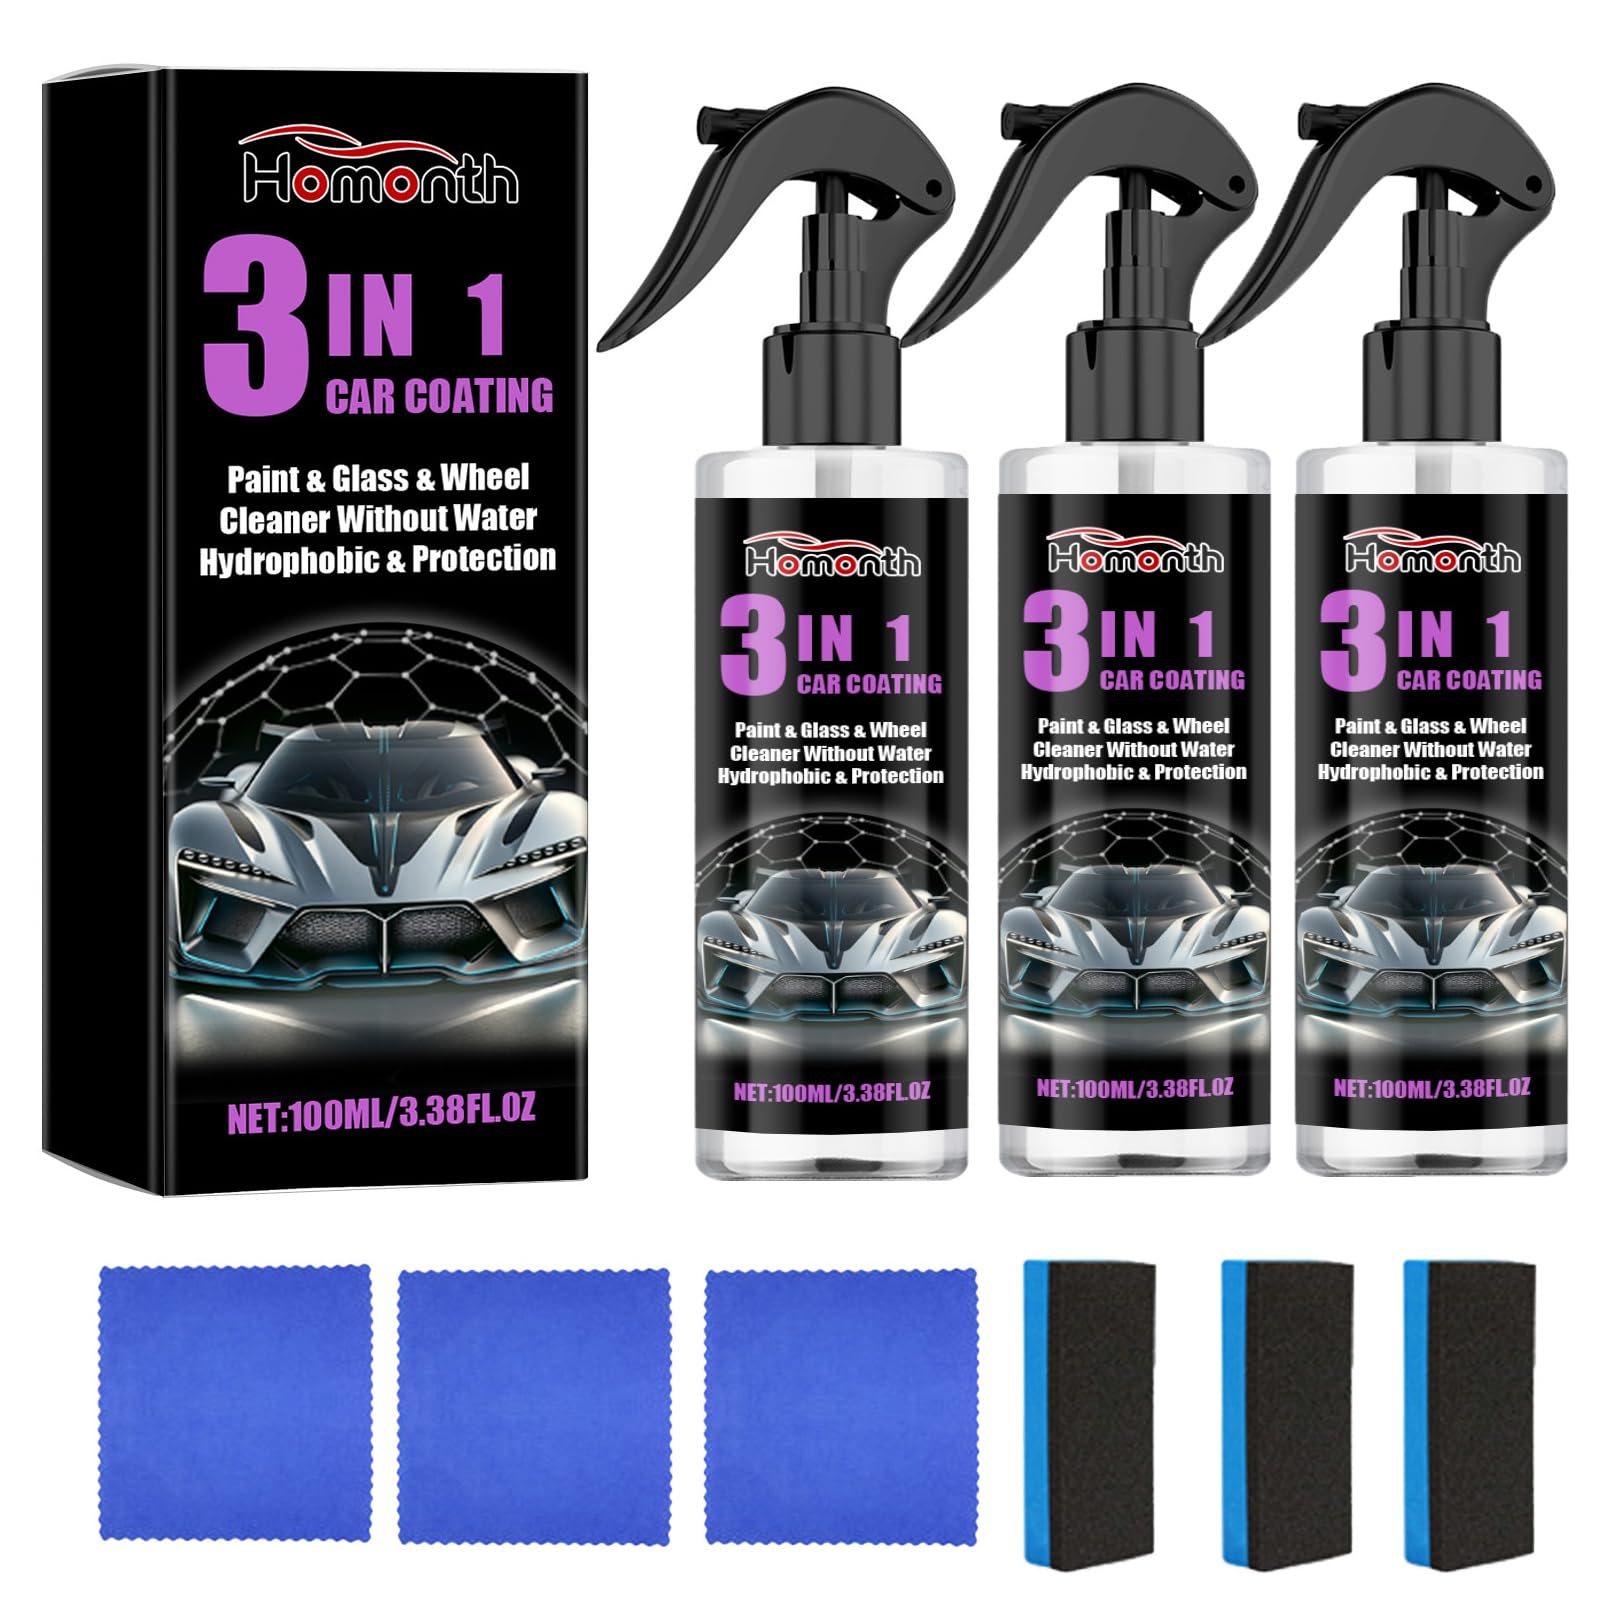 3 in 1 Beschichtungsspray für Auto, 3-in-1 Hoher Schutz Schnelles Auto-Beschichtung Spray, High Protection 3in1 Spray, Autopolitur Spray für Glanz und Schutz, 100ml (3 Stück)